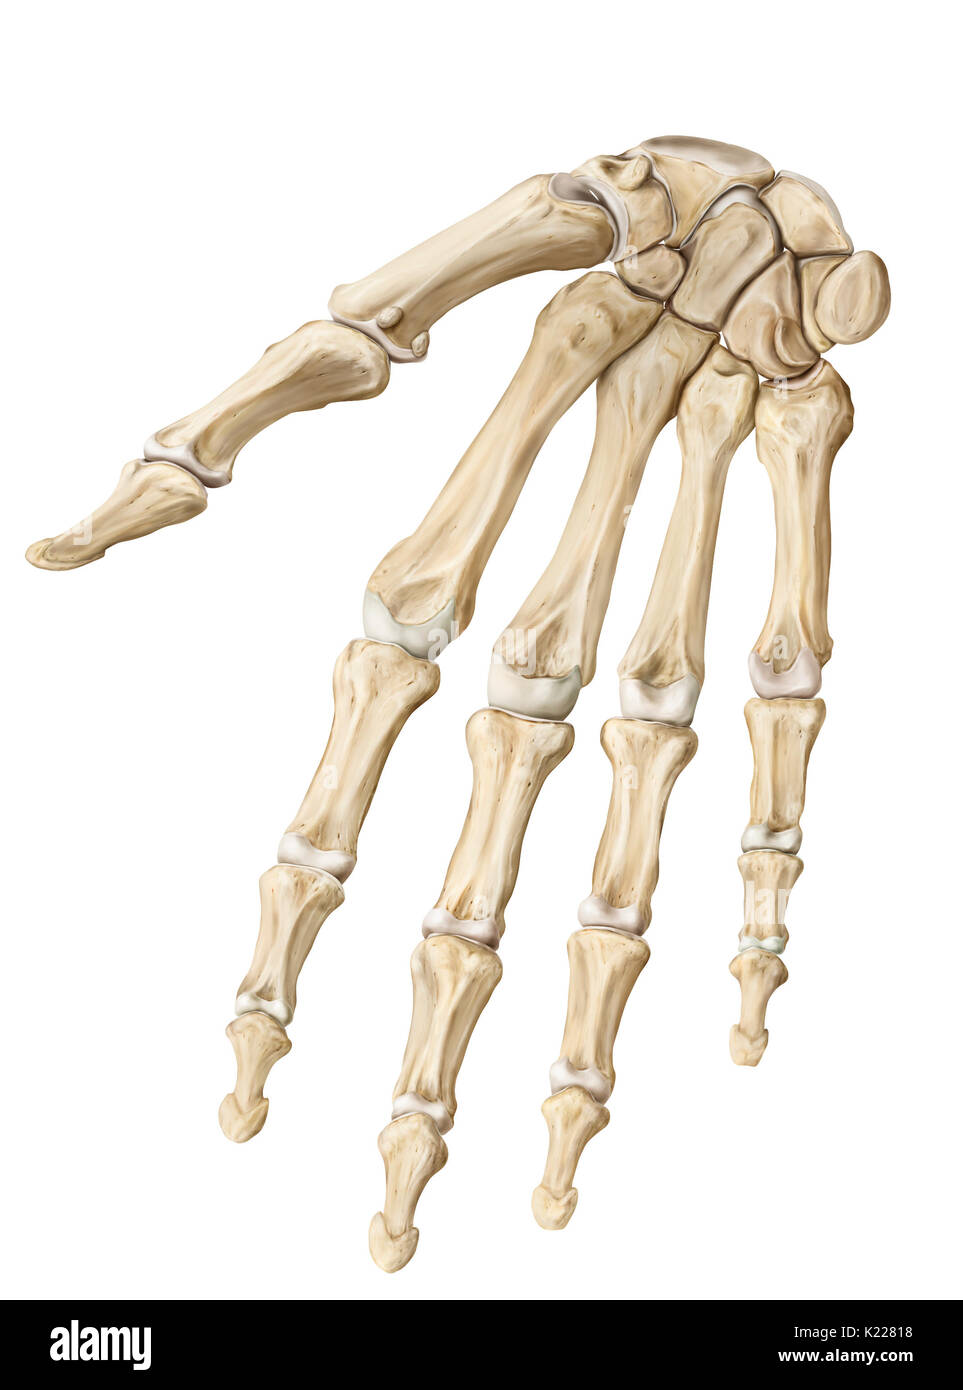 Partie terminale du membre supérieur, ayant une fonction préhensile et tactiles. Le squelette de la main a 27 os. Banque D'Images